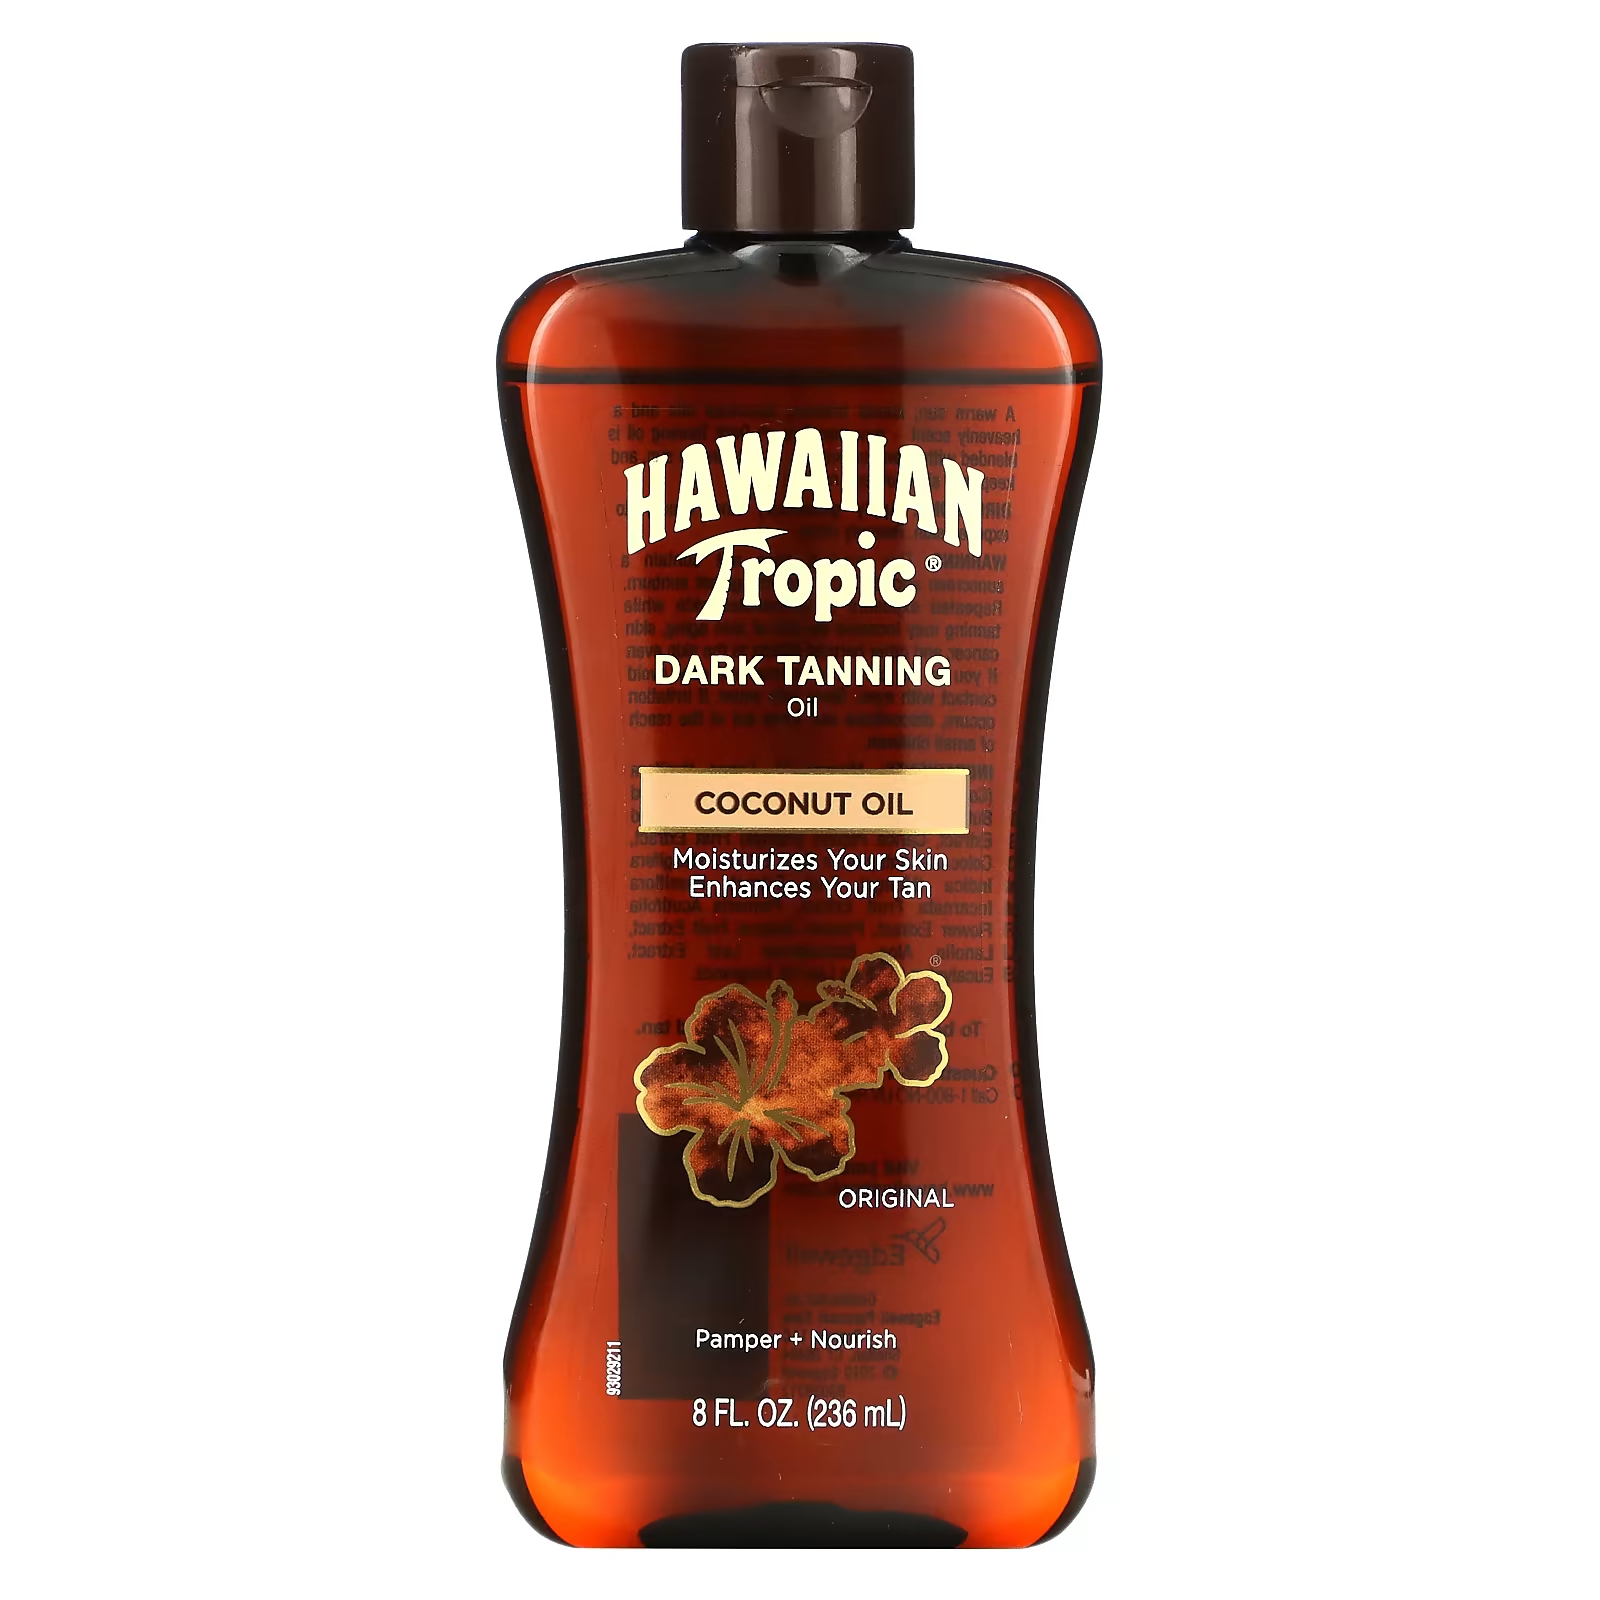 Кокосовое масло Hawaiian Tropic для темного загара, оригинальное, 8 жидких унций (236 мл) sky organics 100% чистое фракционированное кокосовое масло 236 мл 8 жидких унций